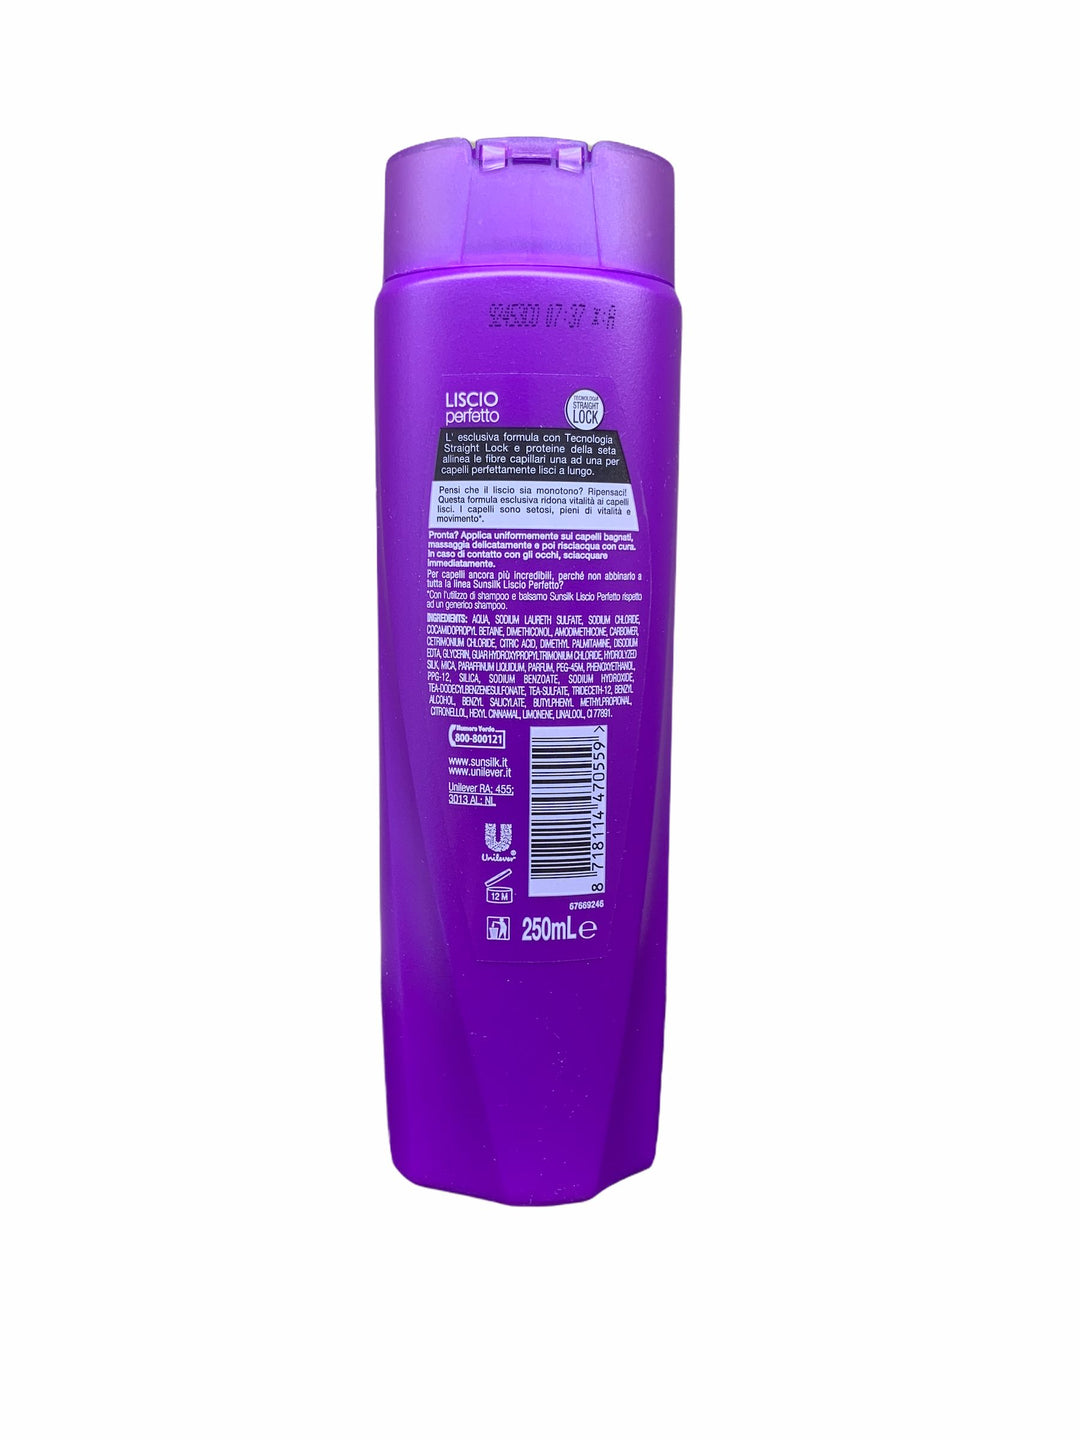 Sunsilk shampoo 2in1 liscio perfetto 250 ml